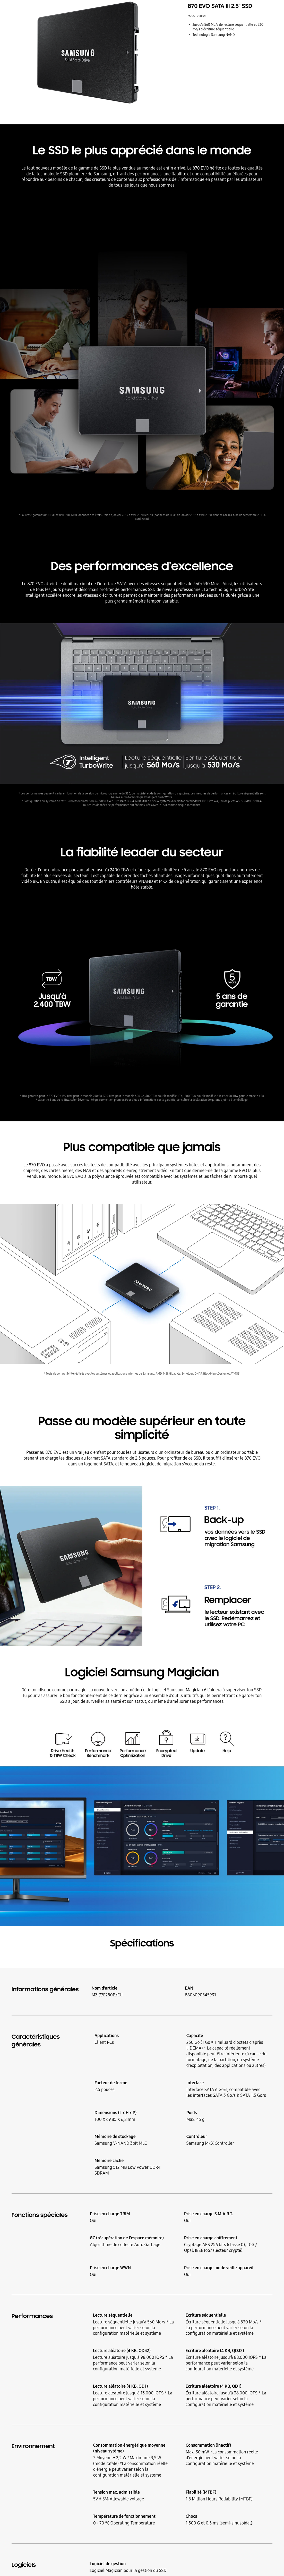 SAMSUNG - Disque Dur SSD 870 EVO SATA 2,5'' 500 Go - La Poste